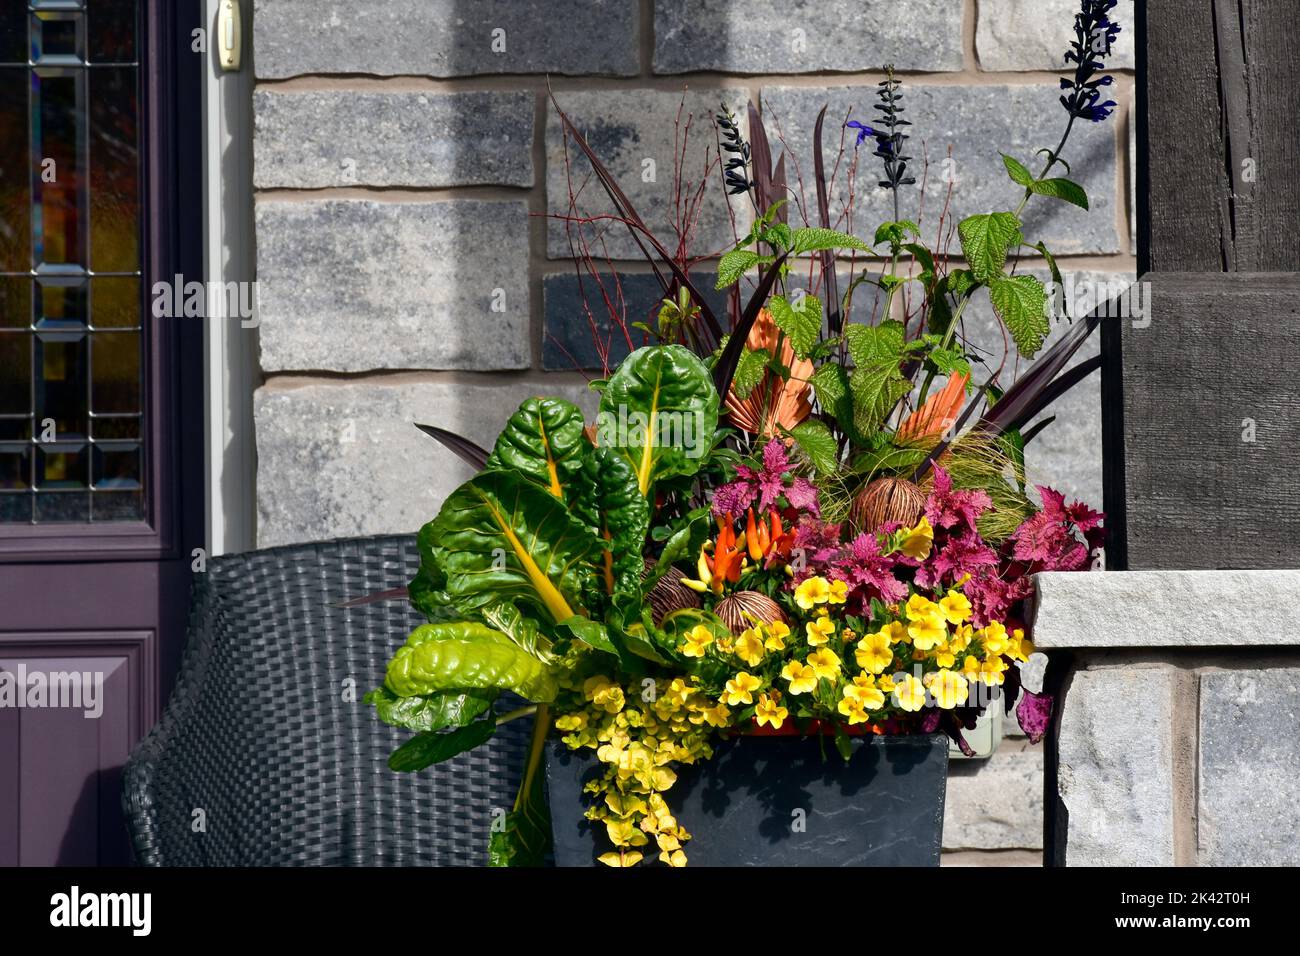 Il giardinaggio del contenitore con i colori luminosi e il kale ornamentale genera una disposizione bella del fiore di ringraziamento. Foto Stock